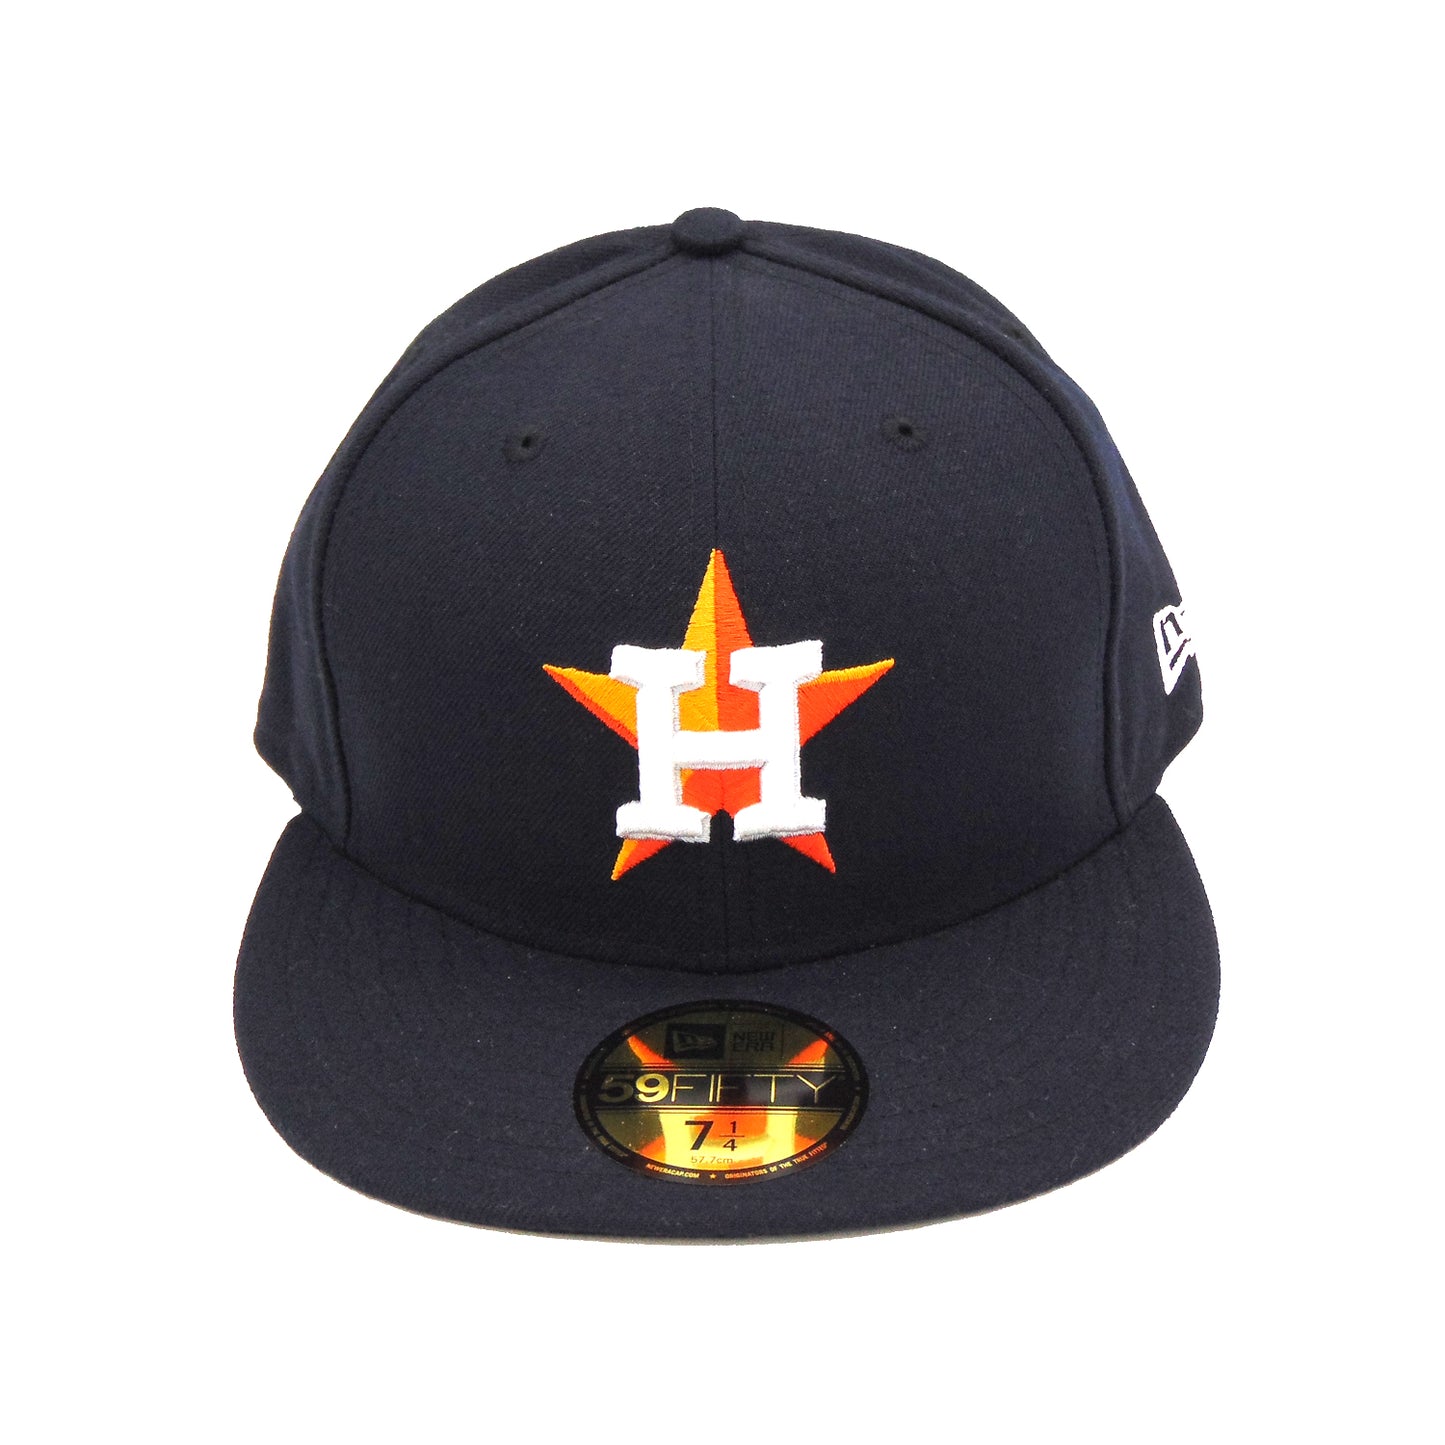 Houston Astros Home Authentic New Era Cap Navy Orange